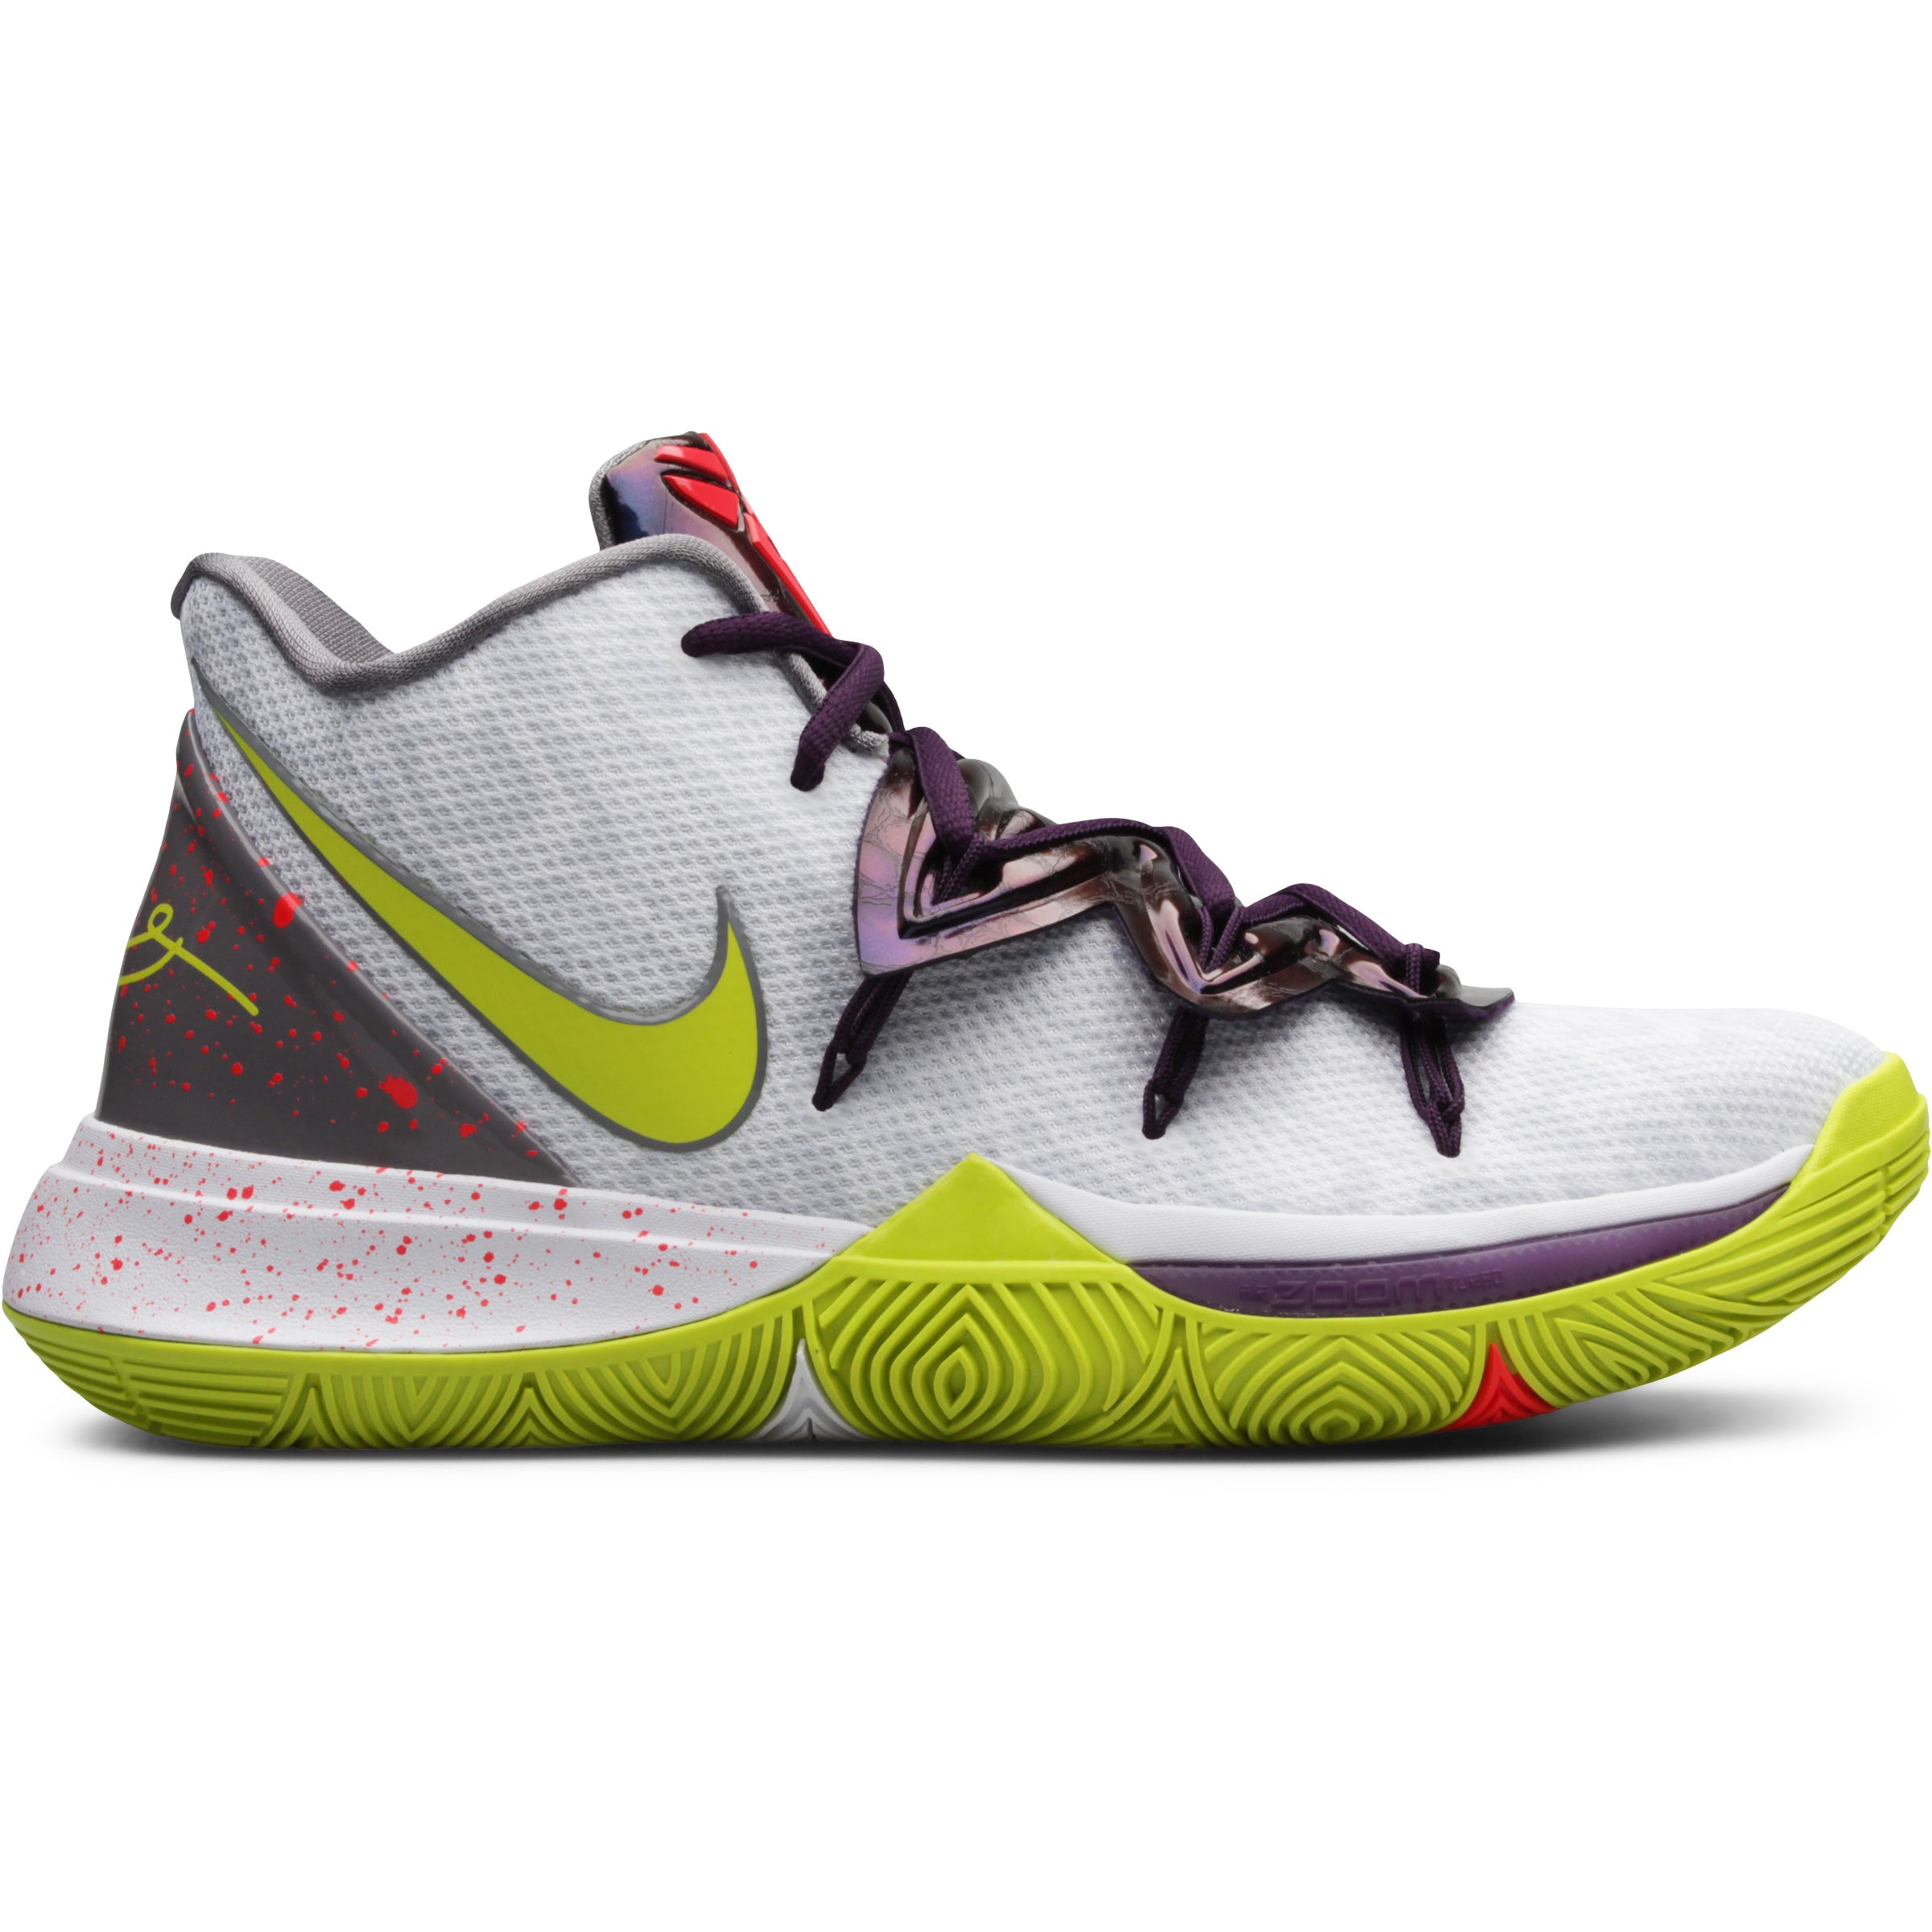 Basket sick sneakers Nike Kyrie 5 EP 'Neon Rainbow